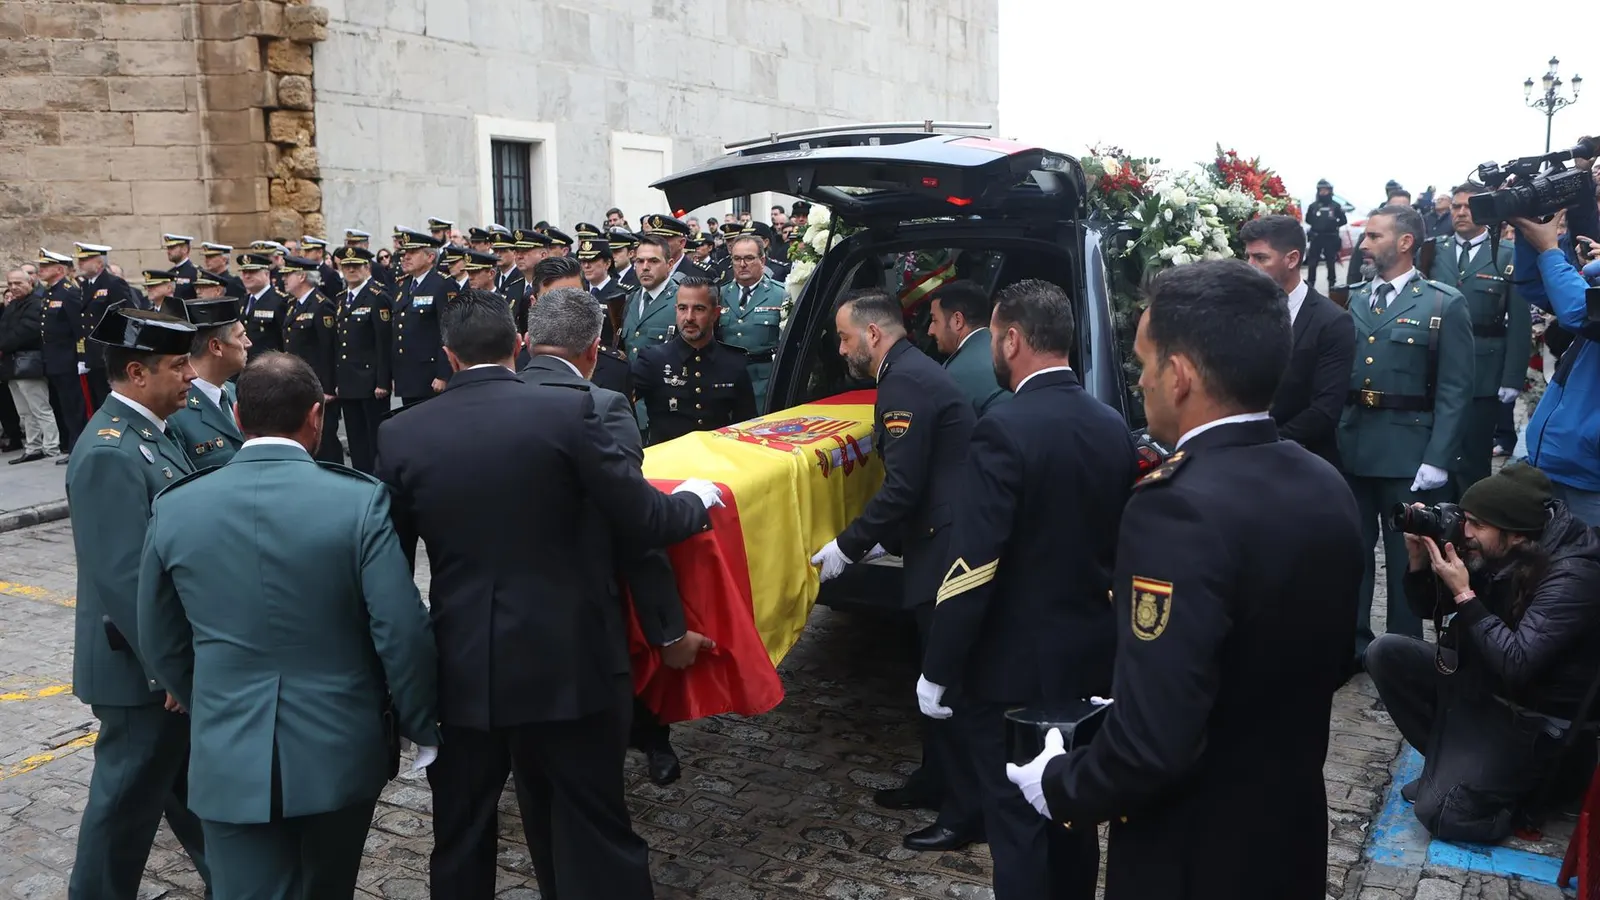 Agentes y autoridades dan el último adiós con "profundo pesar" al guardia civil de San Fernando muerto en BarbateEuropa Press